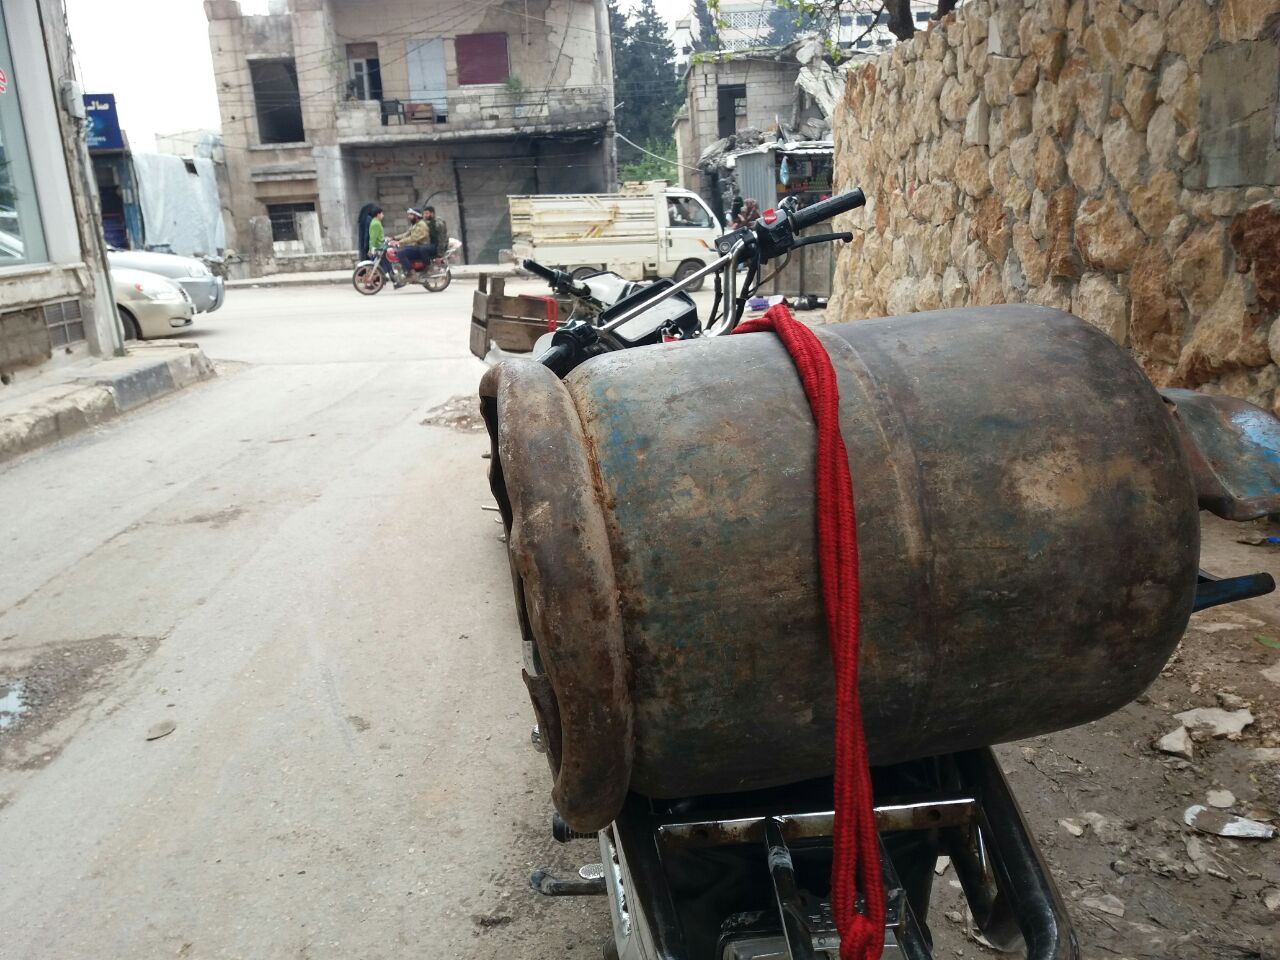 اشتكى بعض الأهالي في مدينة إدلب من انقطاع مادة الغاز المنزلي، مطالبين الجهات المعنية بتأمينها بشكل أفضل مع اقتراب شهر رمضان.